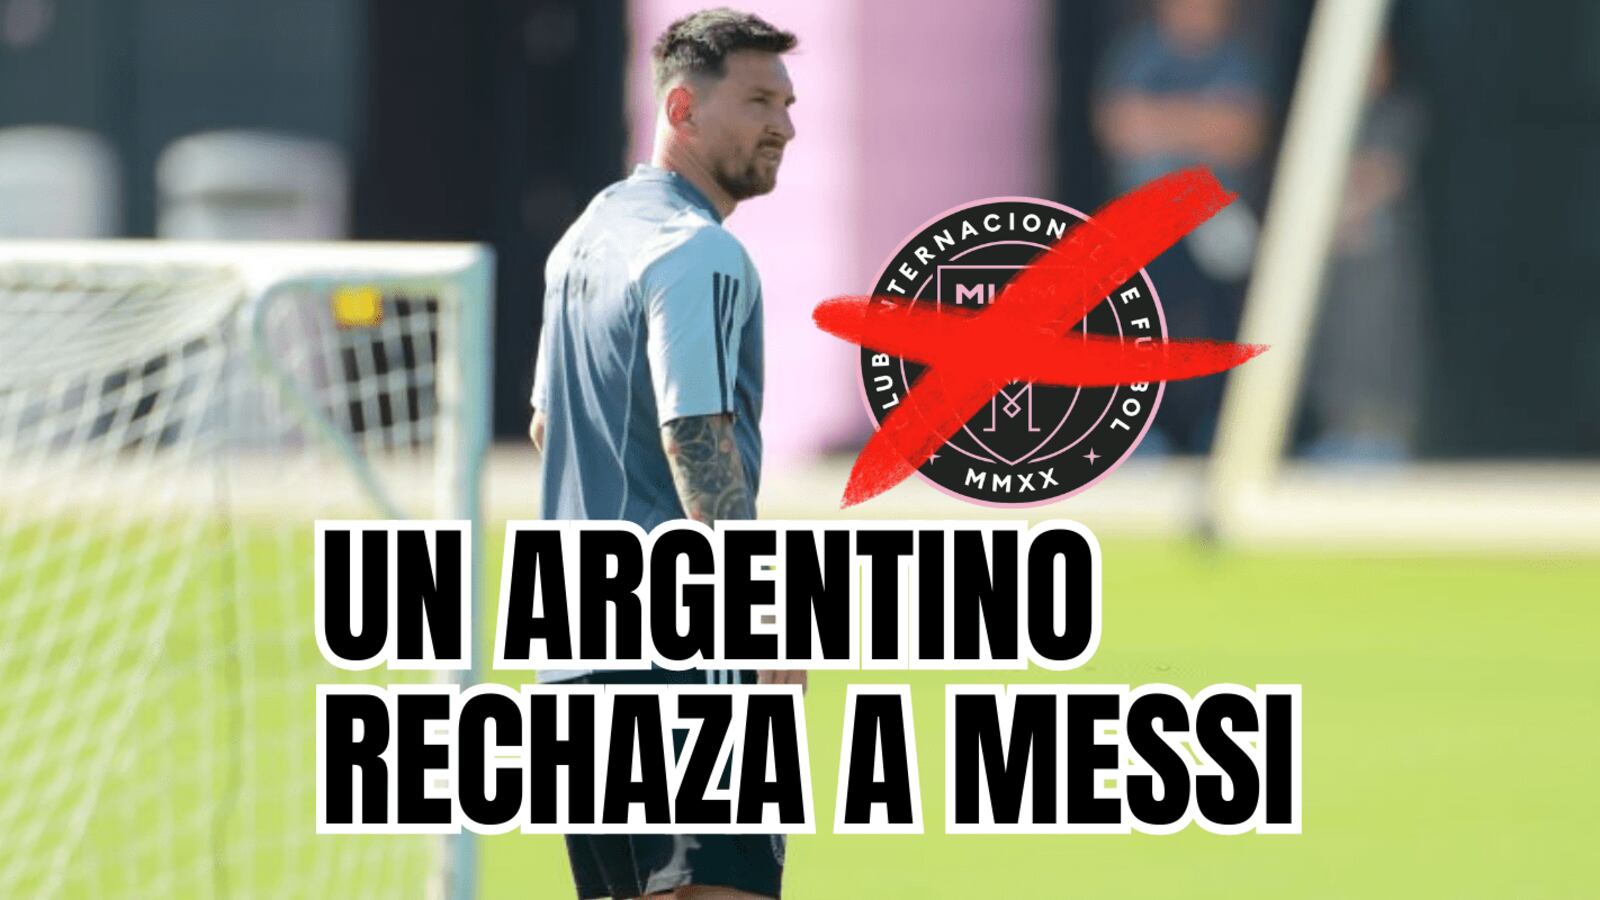 Messi recibe la peor noticia, el 1er argentino que rechaza al Inter Miami, sorprende